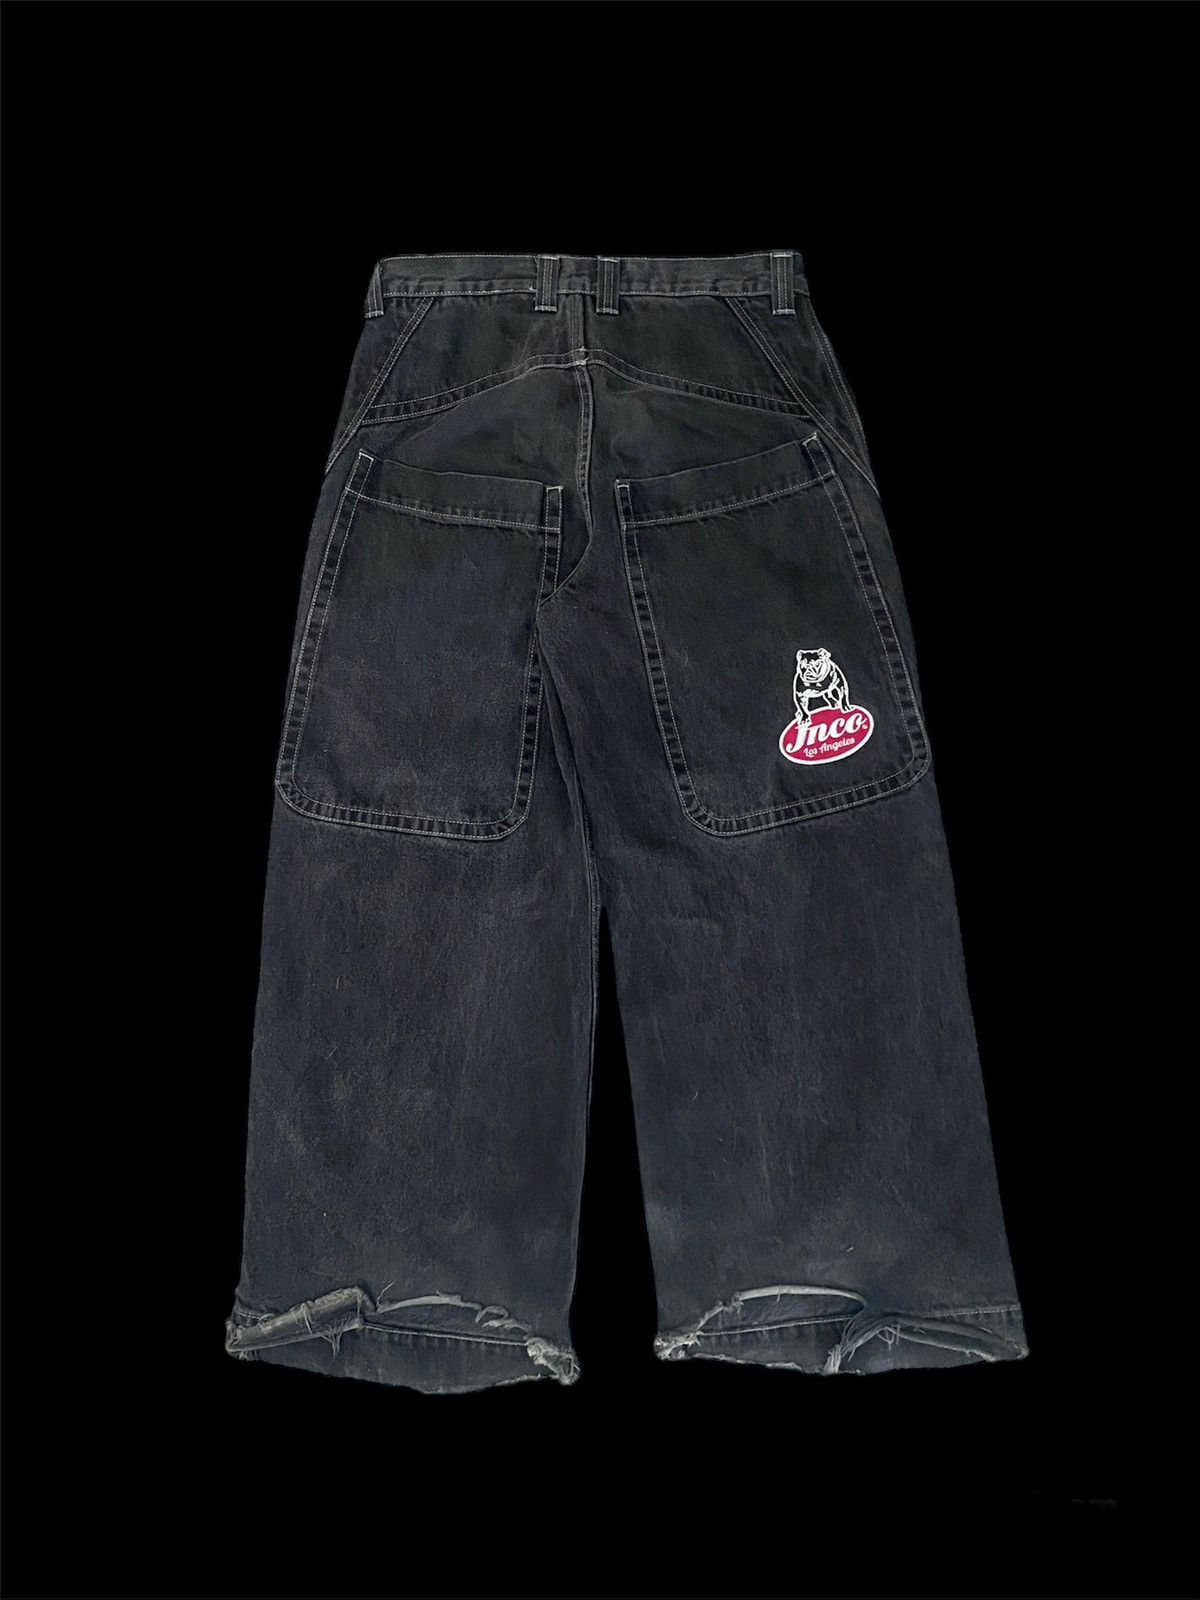 Vintage big rig jnco jeans | Grailed